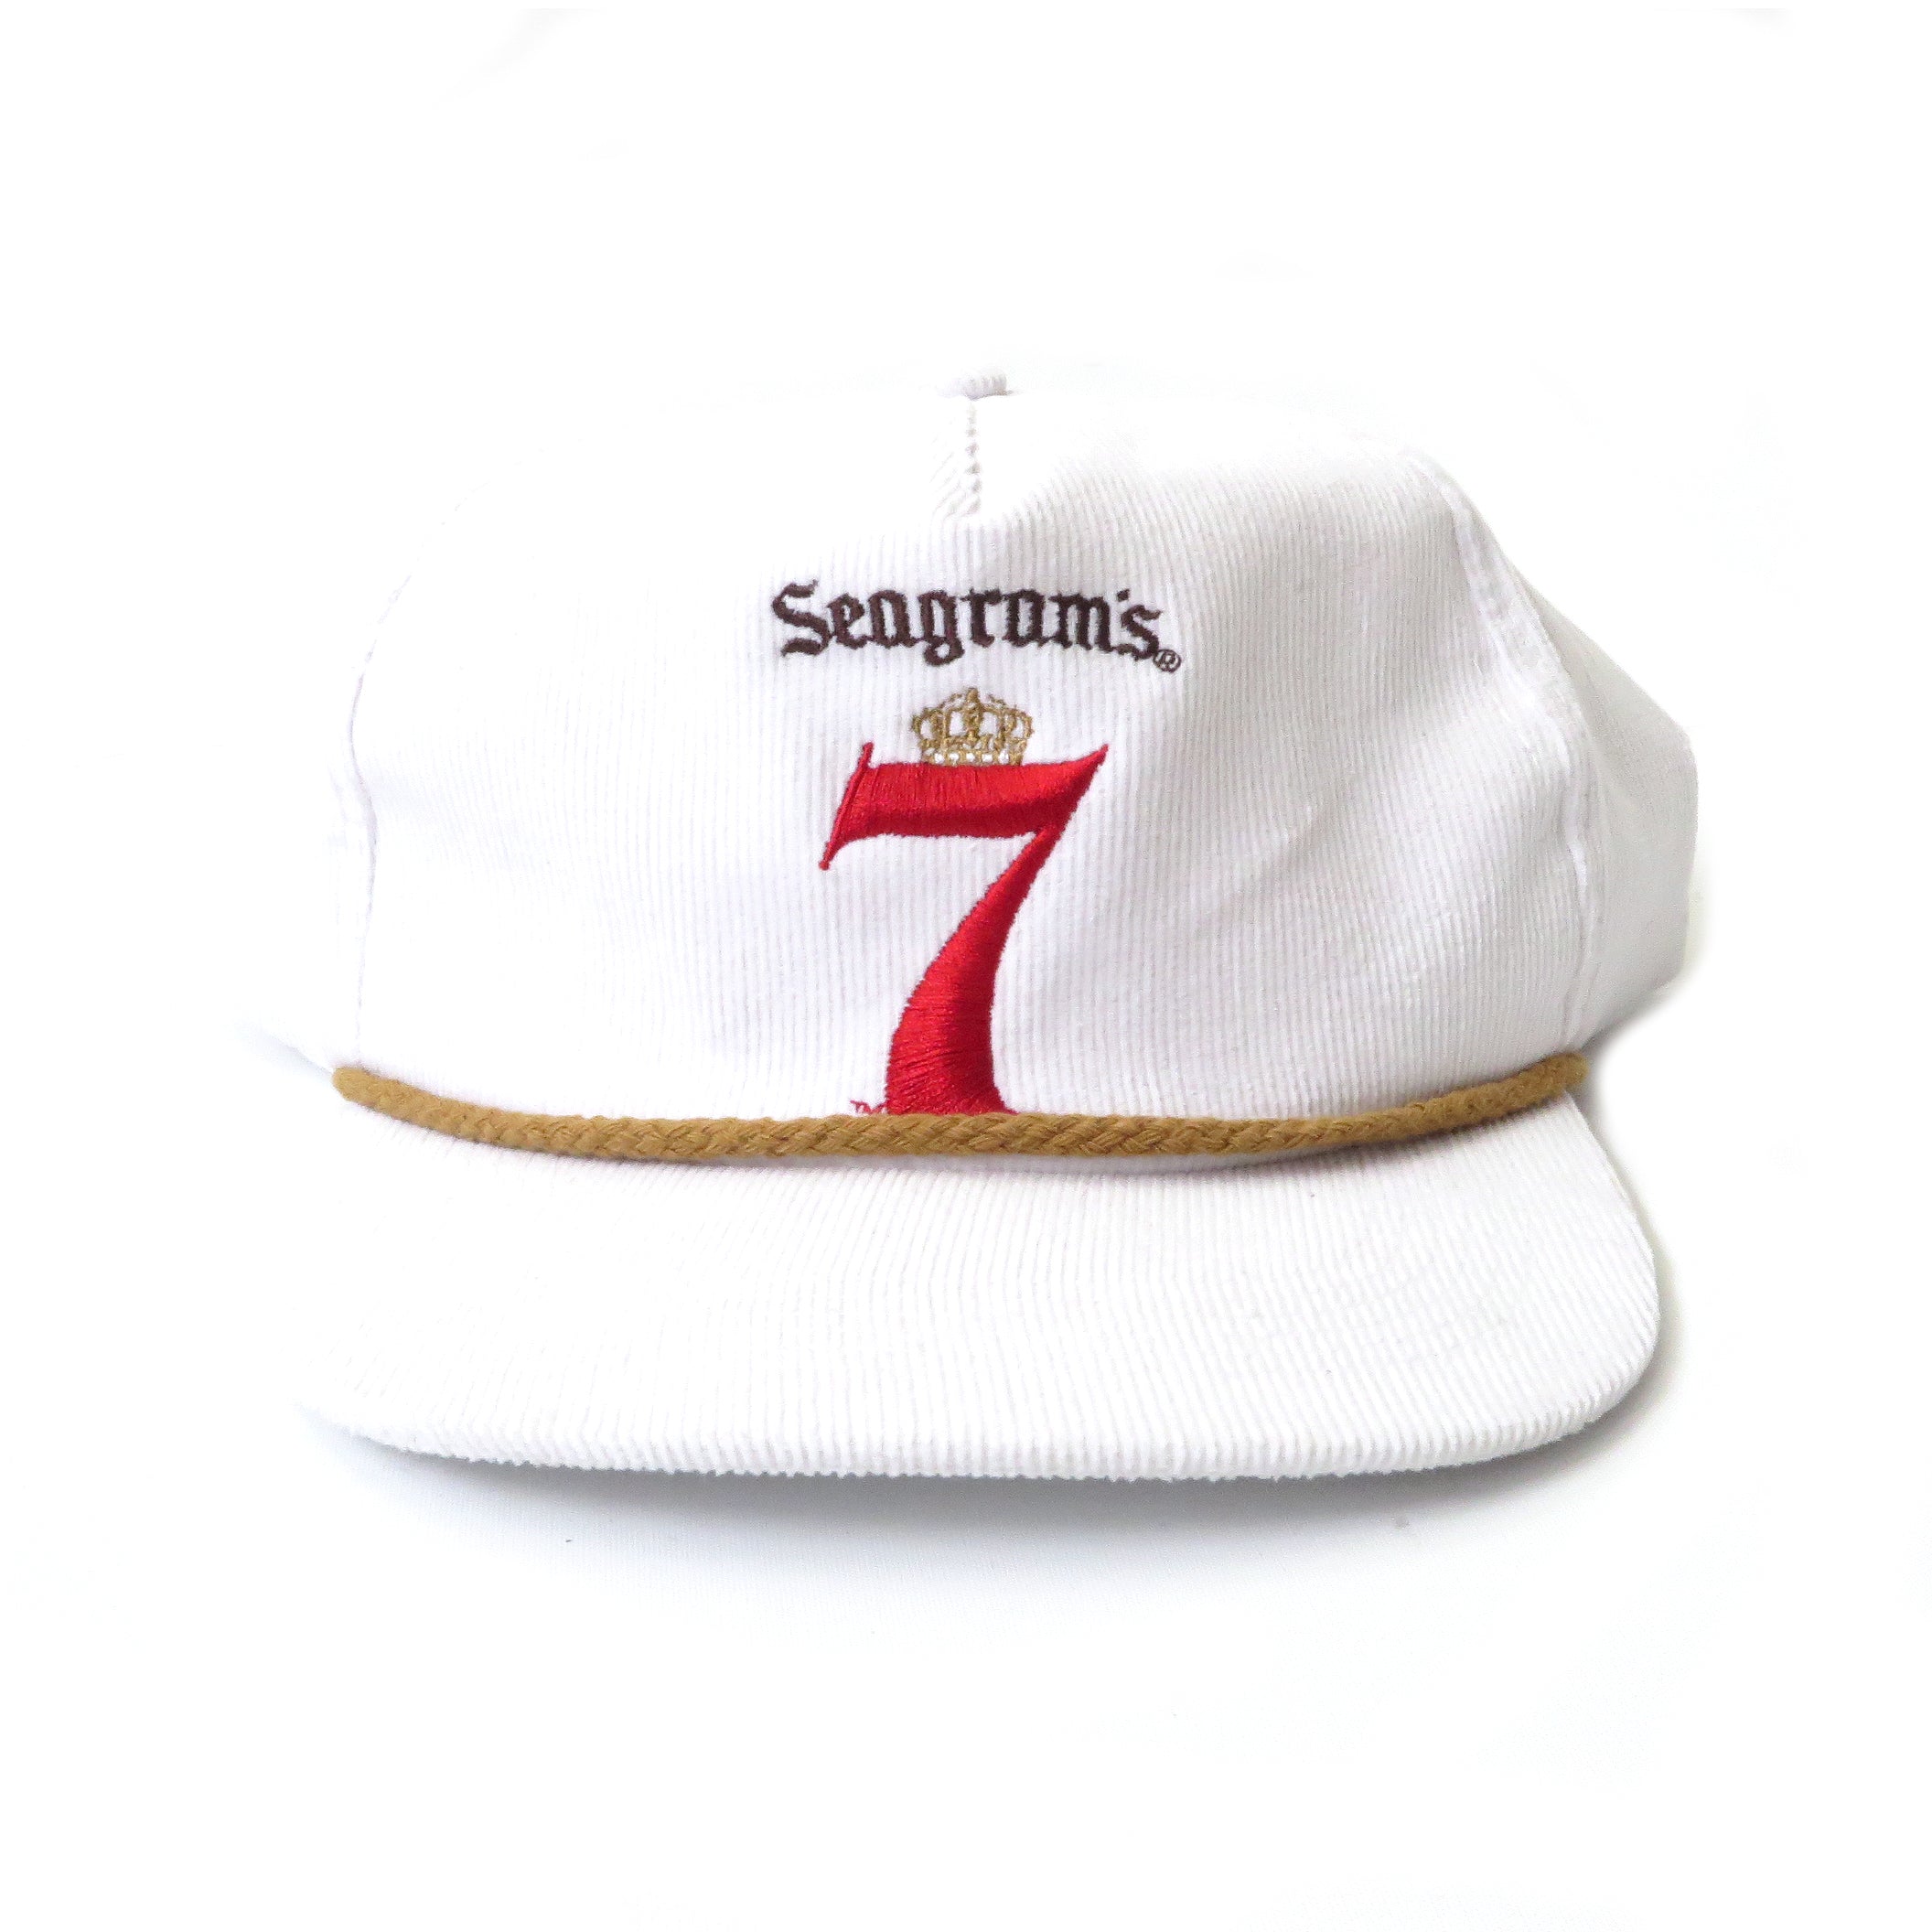 Vintage Seagram's 7 Snapback Hat